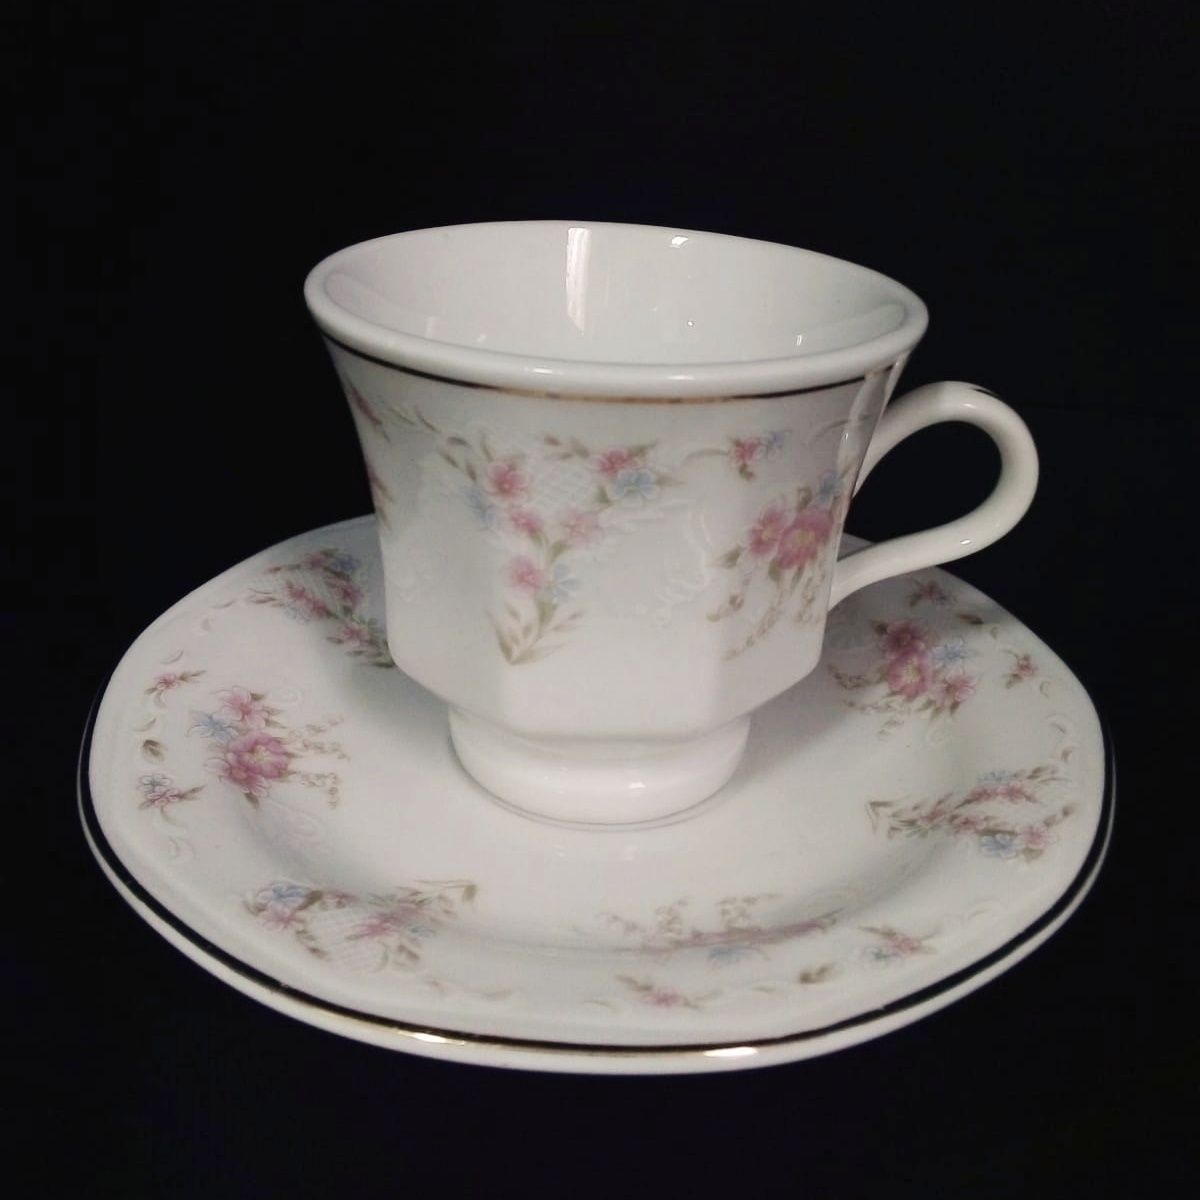 Chávena de Chá e Pires em Porcelana com Decoração Floral